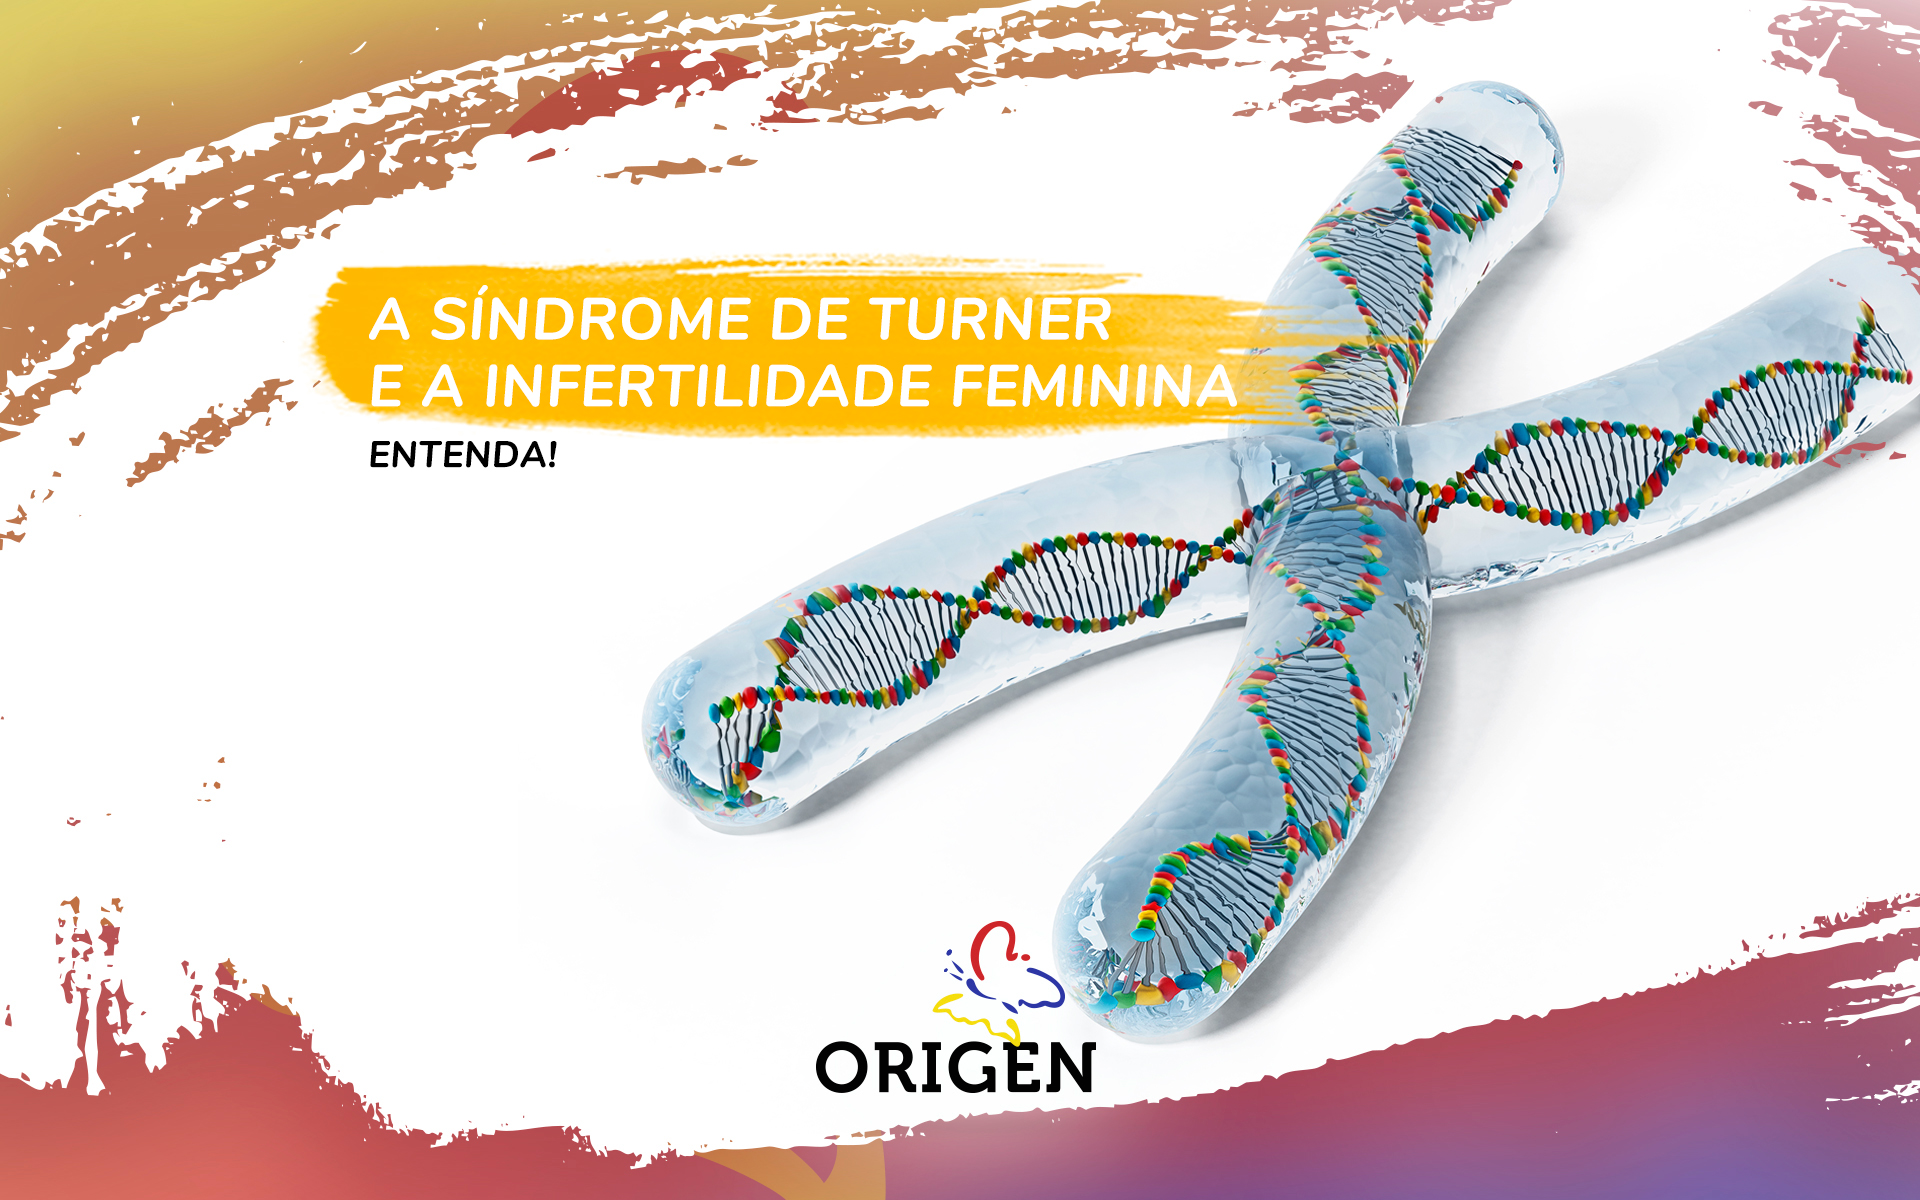 A síndrome de Turner e a infertilidade feminina. Entenda!